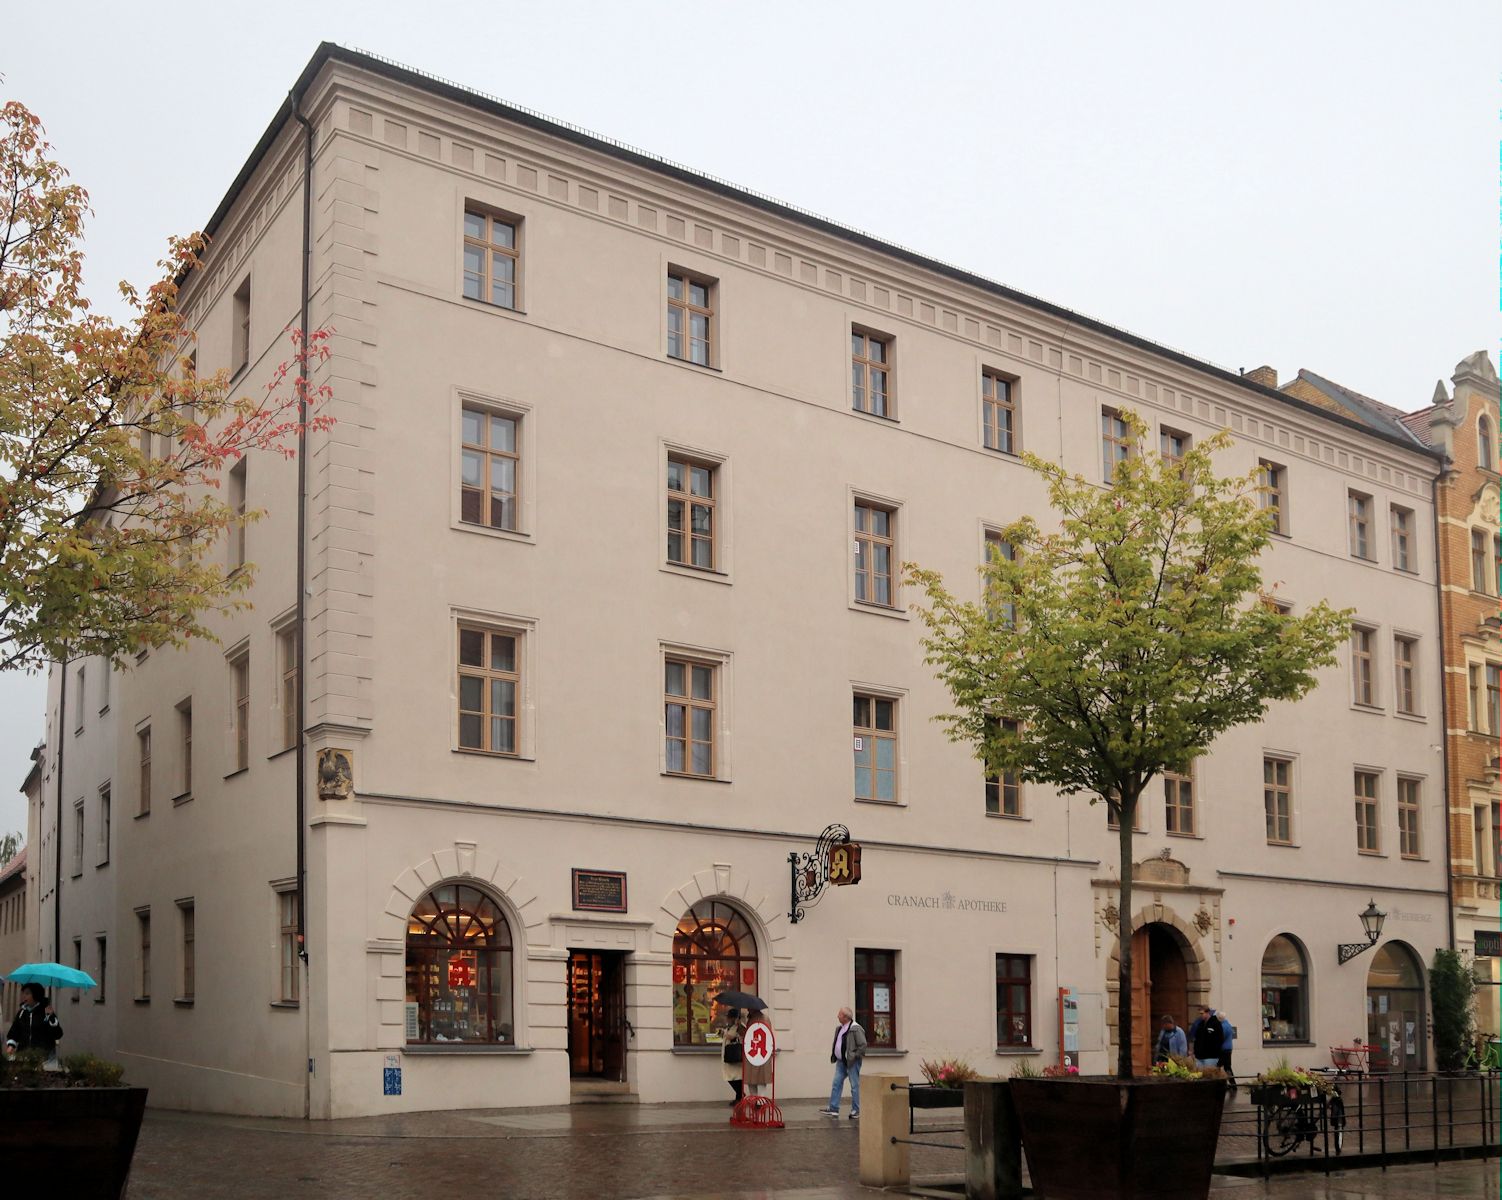 Lukas Cranachs zweites Haus in Wittenberg